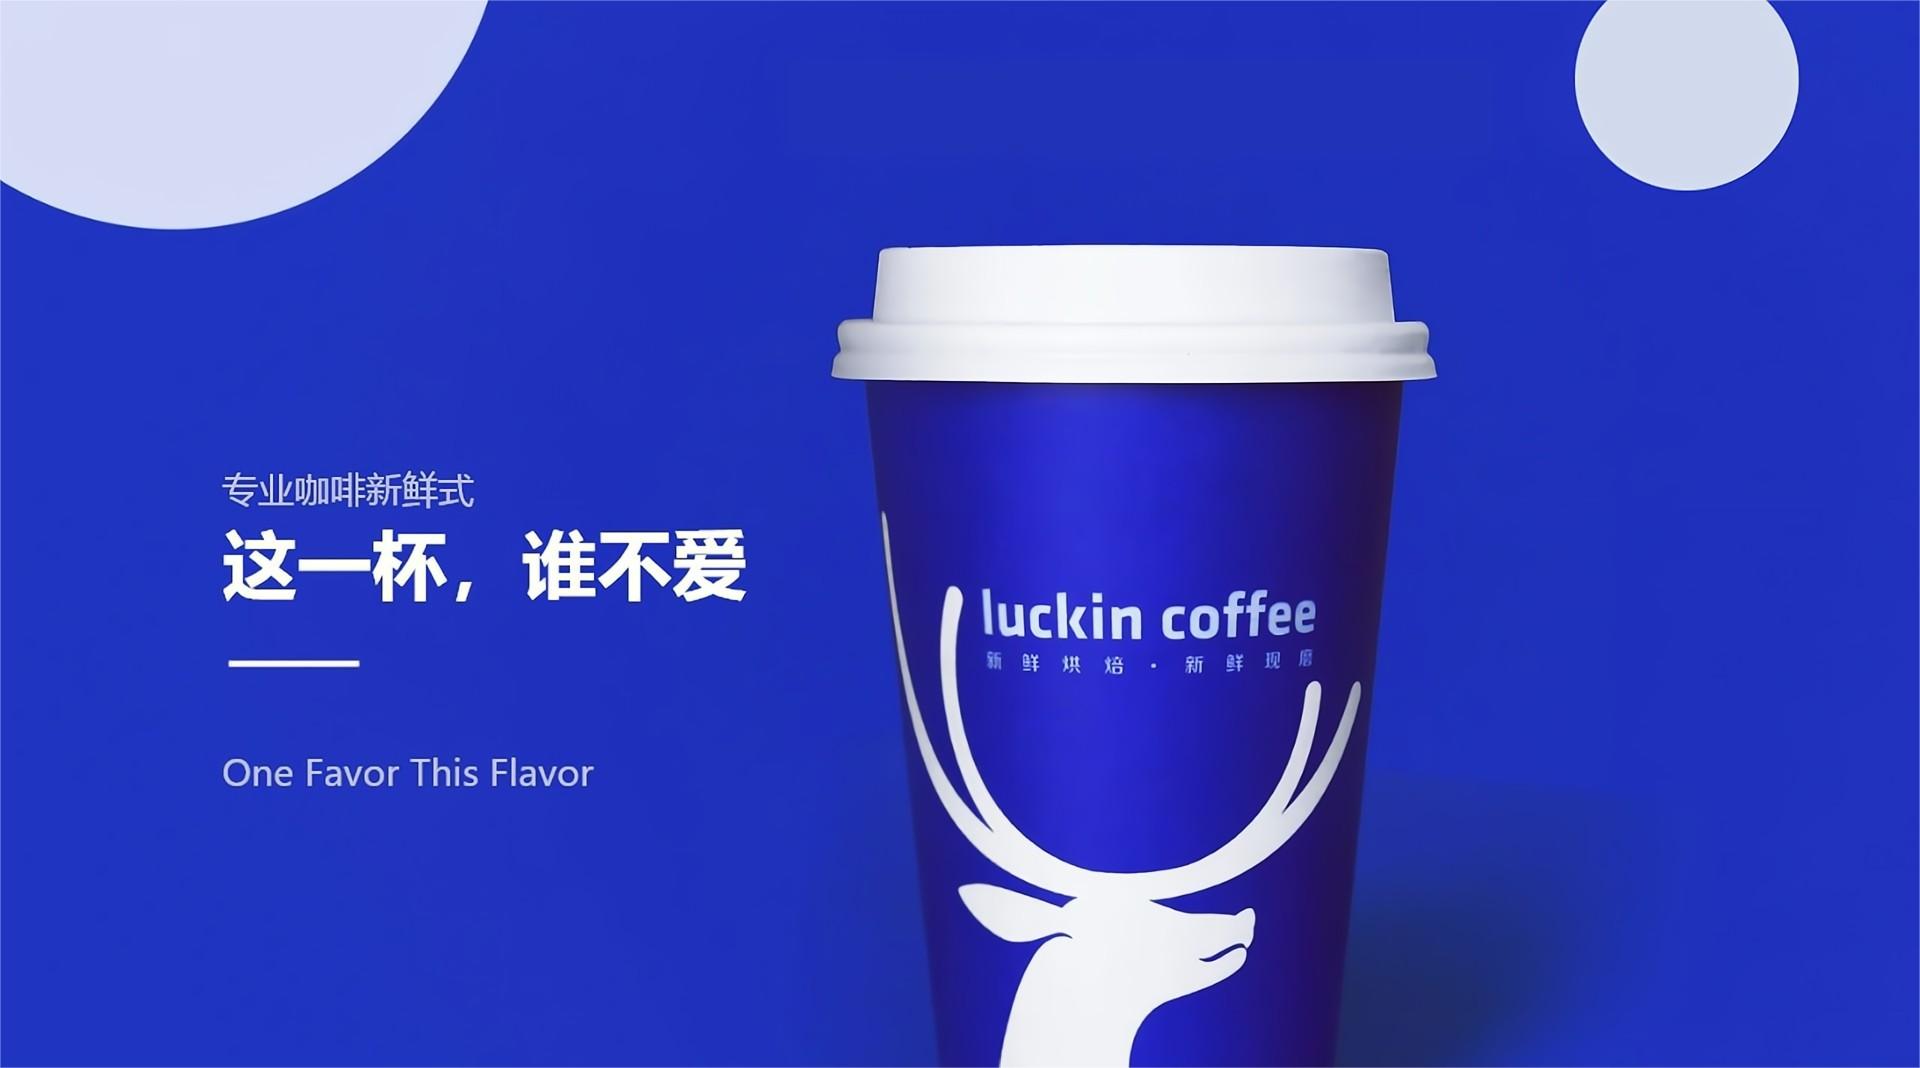 瑞幸咖啡(中国)官网